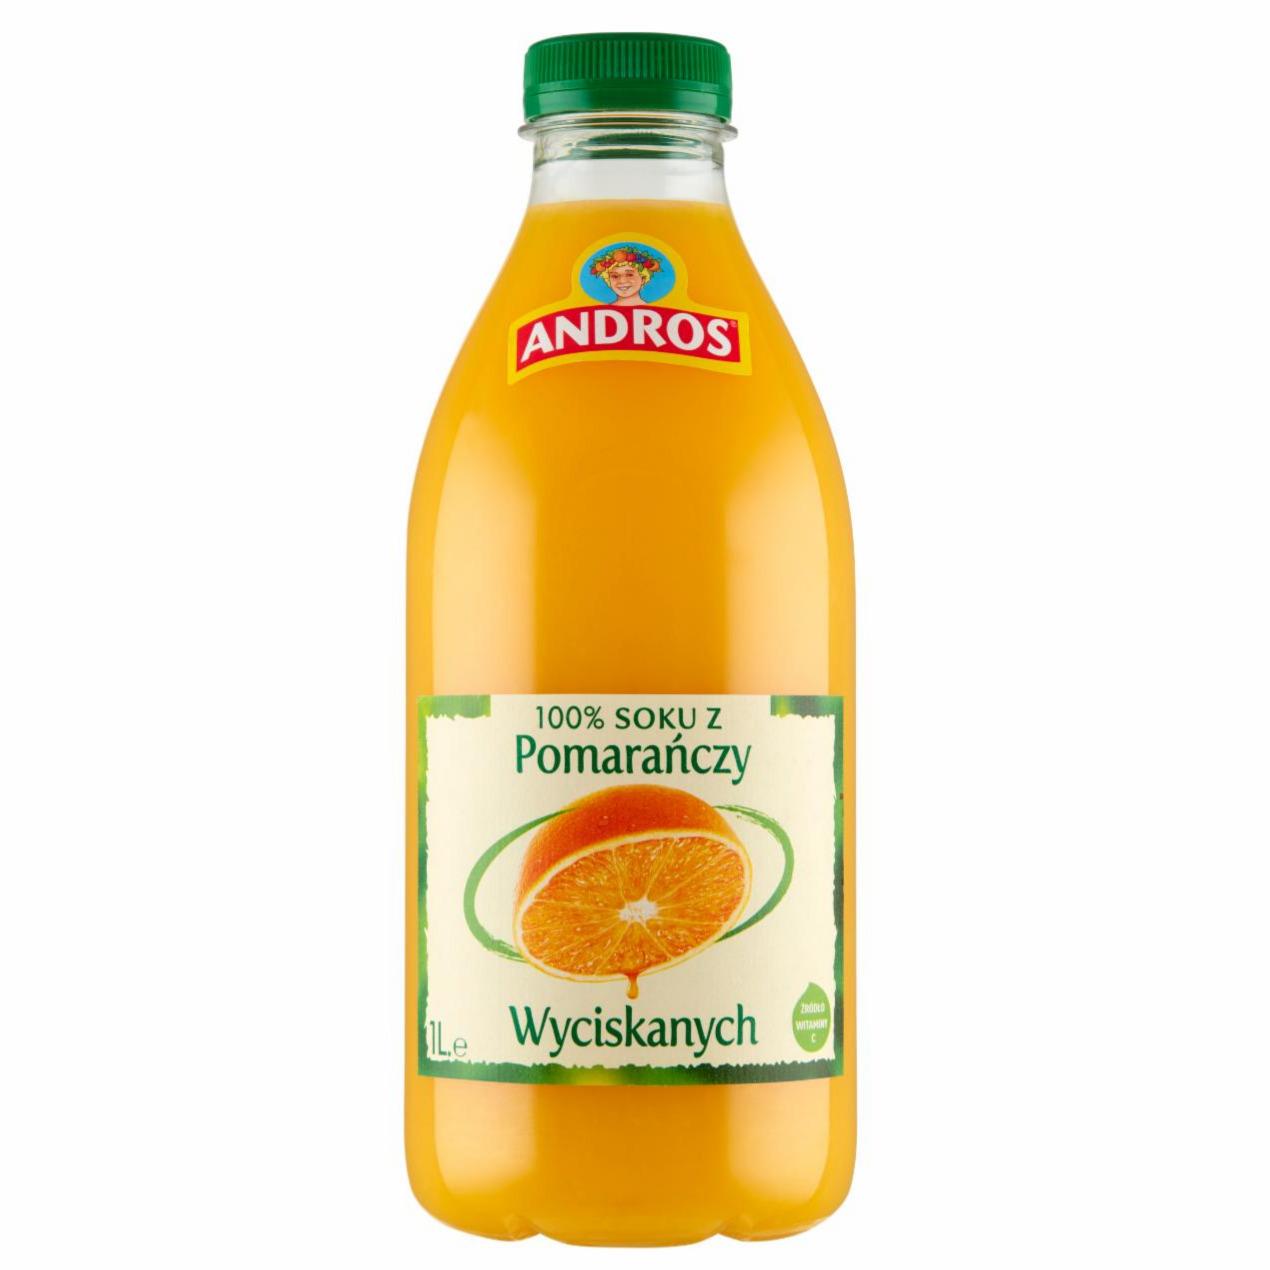 Zdjęcia - Andros 100 % soku z wyciskanych pomarańczy 1 l